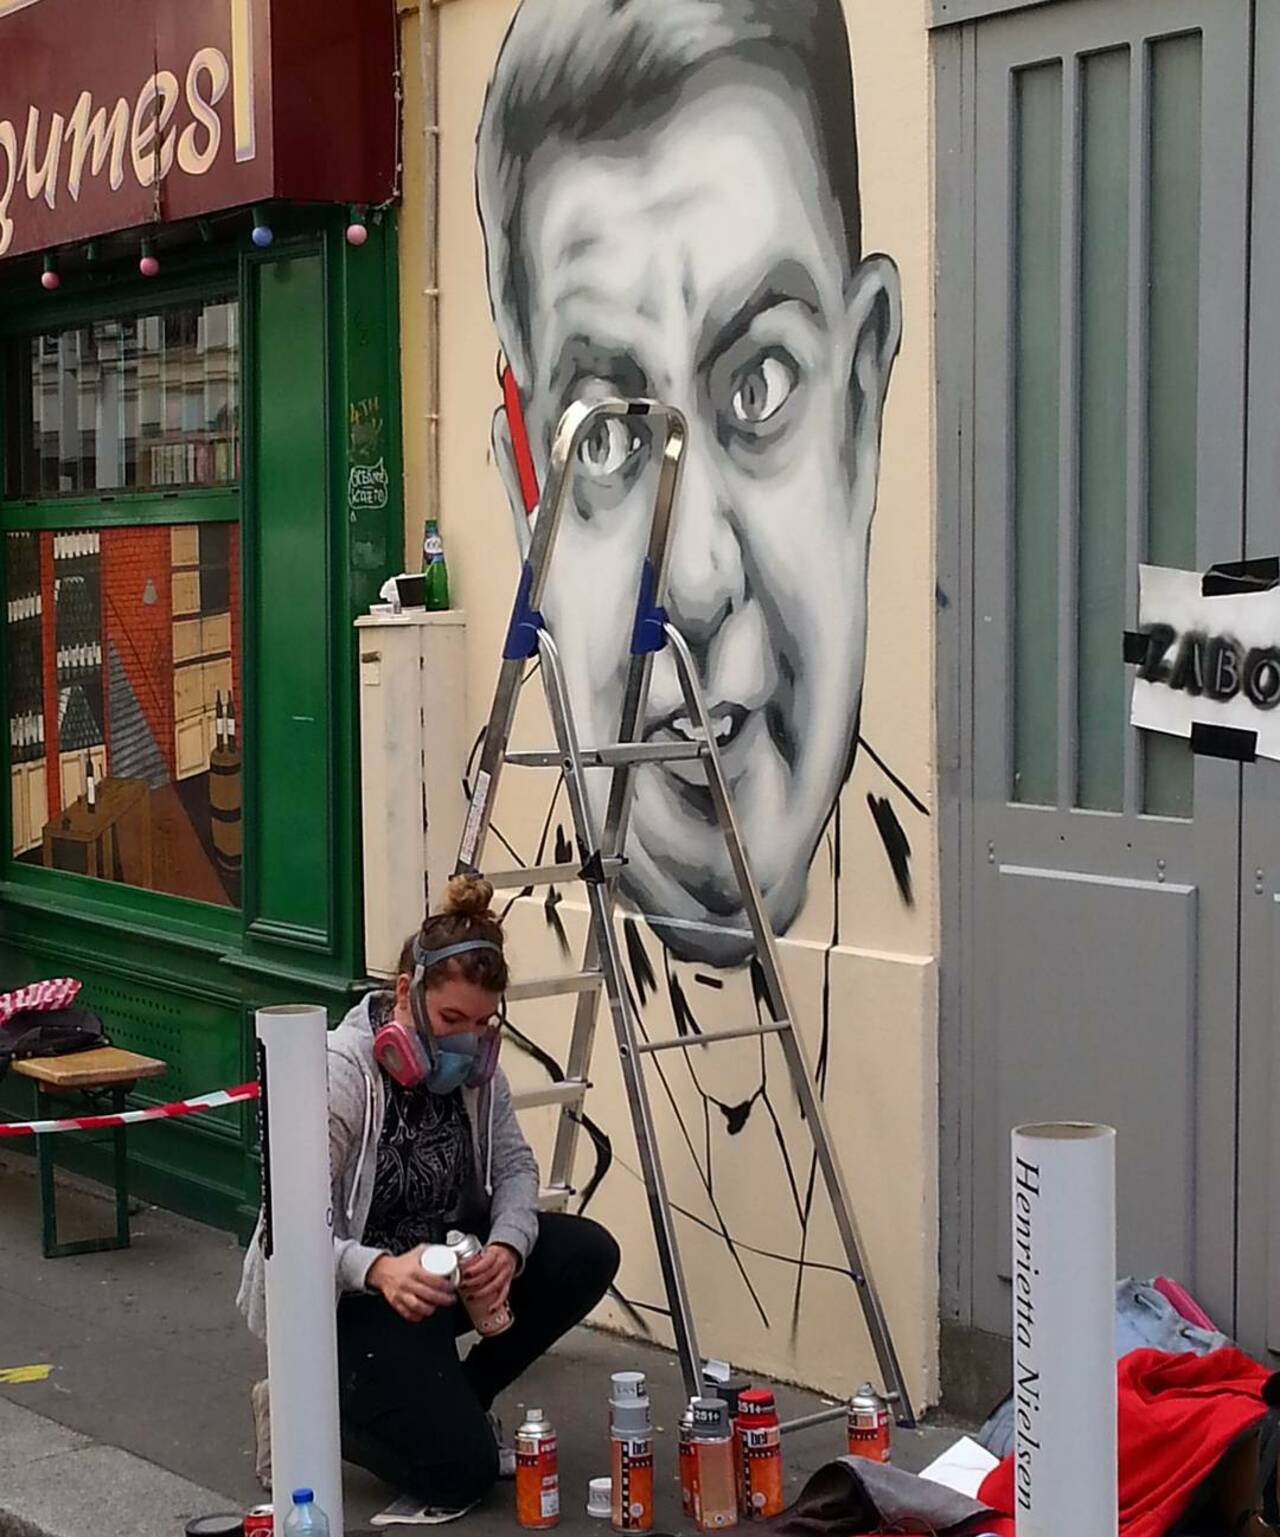 #Paris #graffiti photo by @fotoflaneuse http://ift.tt/1Ove1zm #StreetArt http://t.co/jfoL7qDd0O